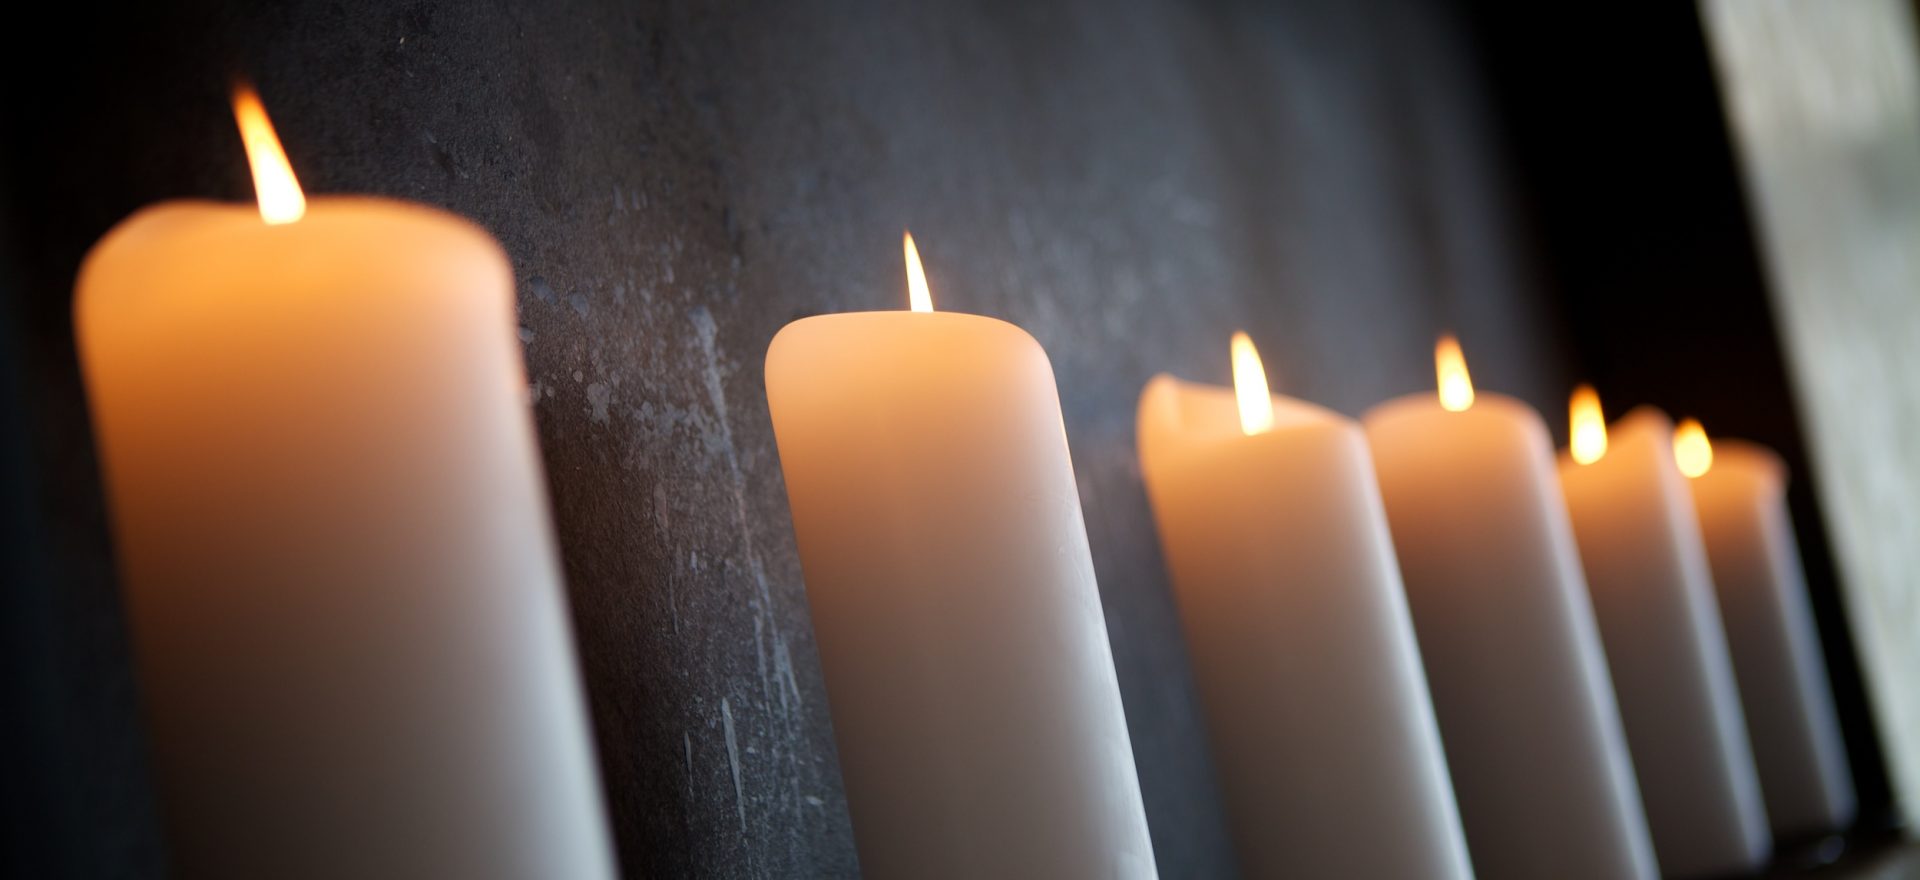 Les 6 bougies commémorent les 6 millions de Juifs tués pendant l'Holocauste.